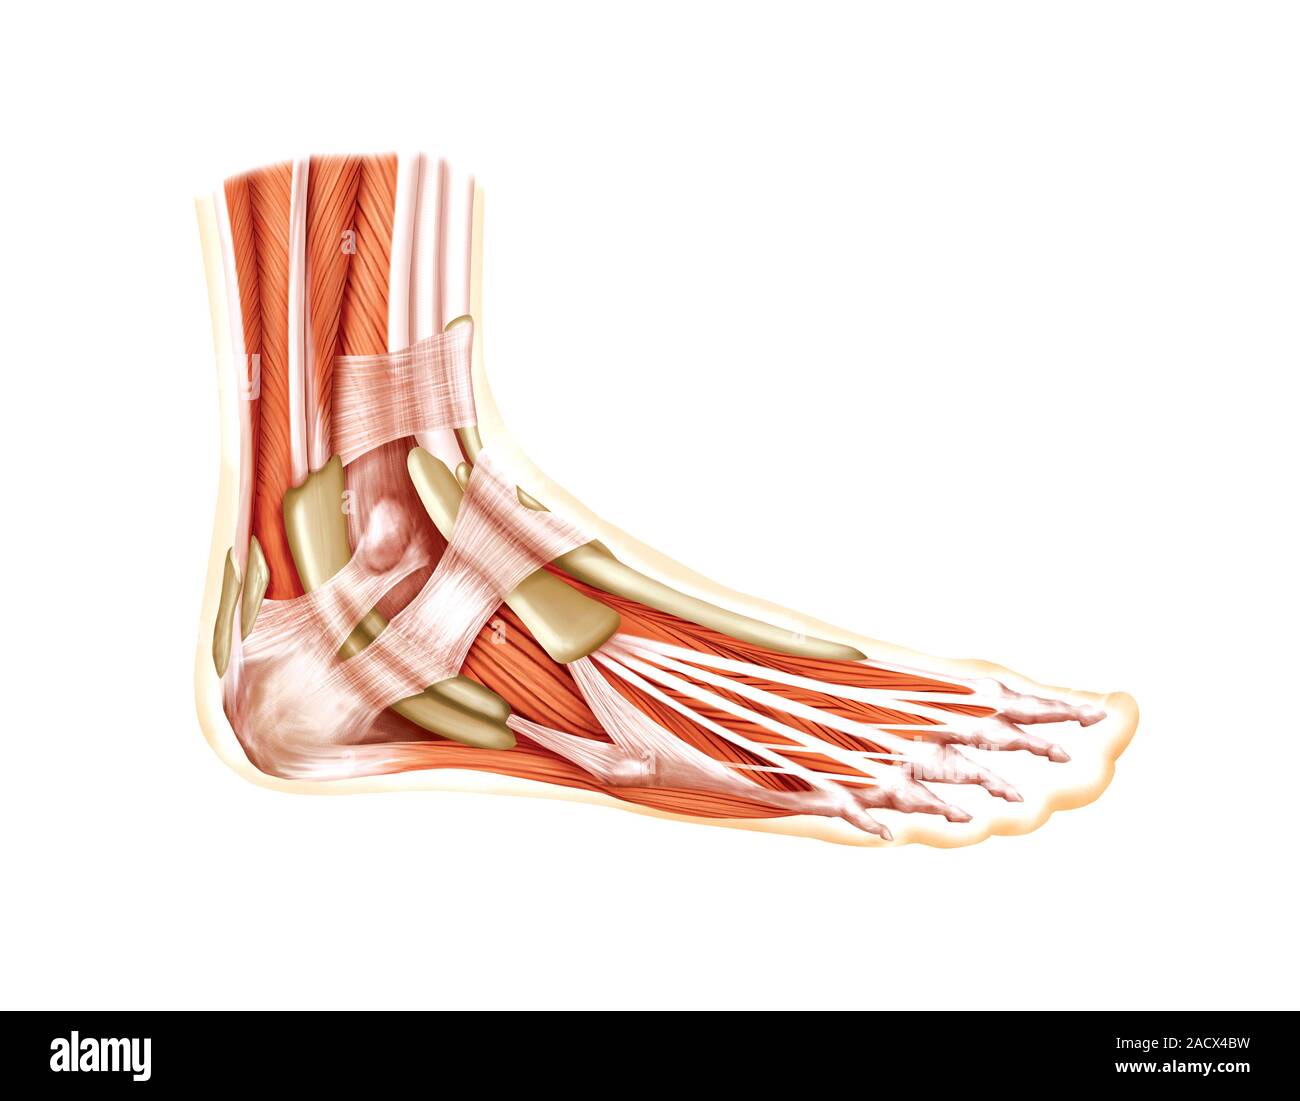 Foot muscle. Сухожилия стопы анатомия. Стопа анатомия мышцы связки фасции. Мышцы стопы и голеностопного сустава анатомия. Разгибатели стопы анатомия.